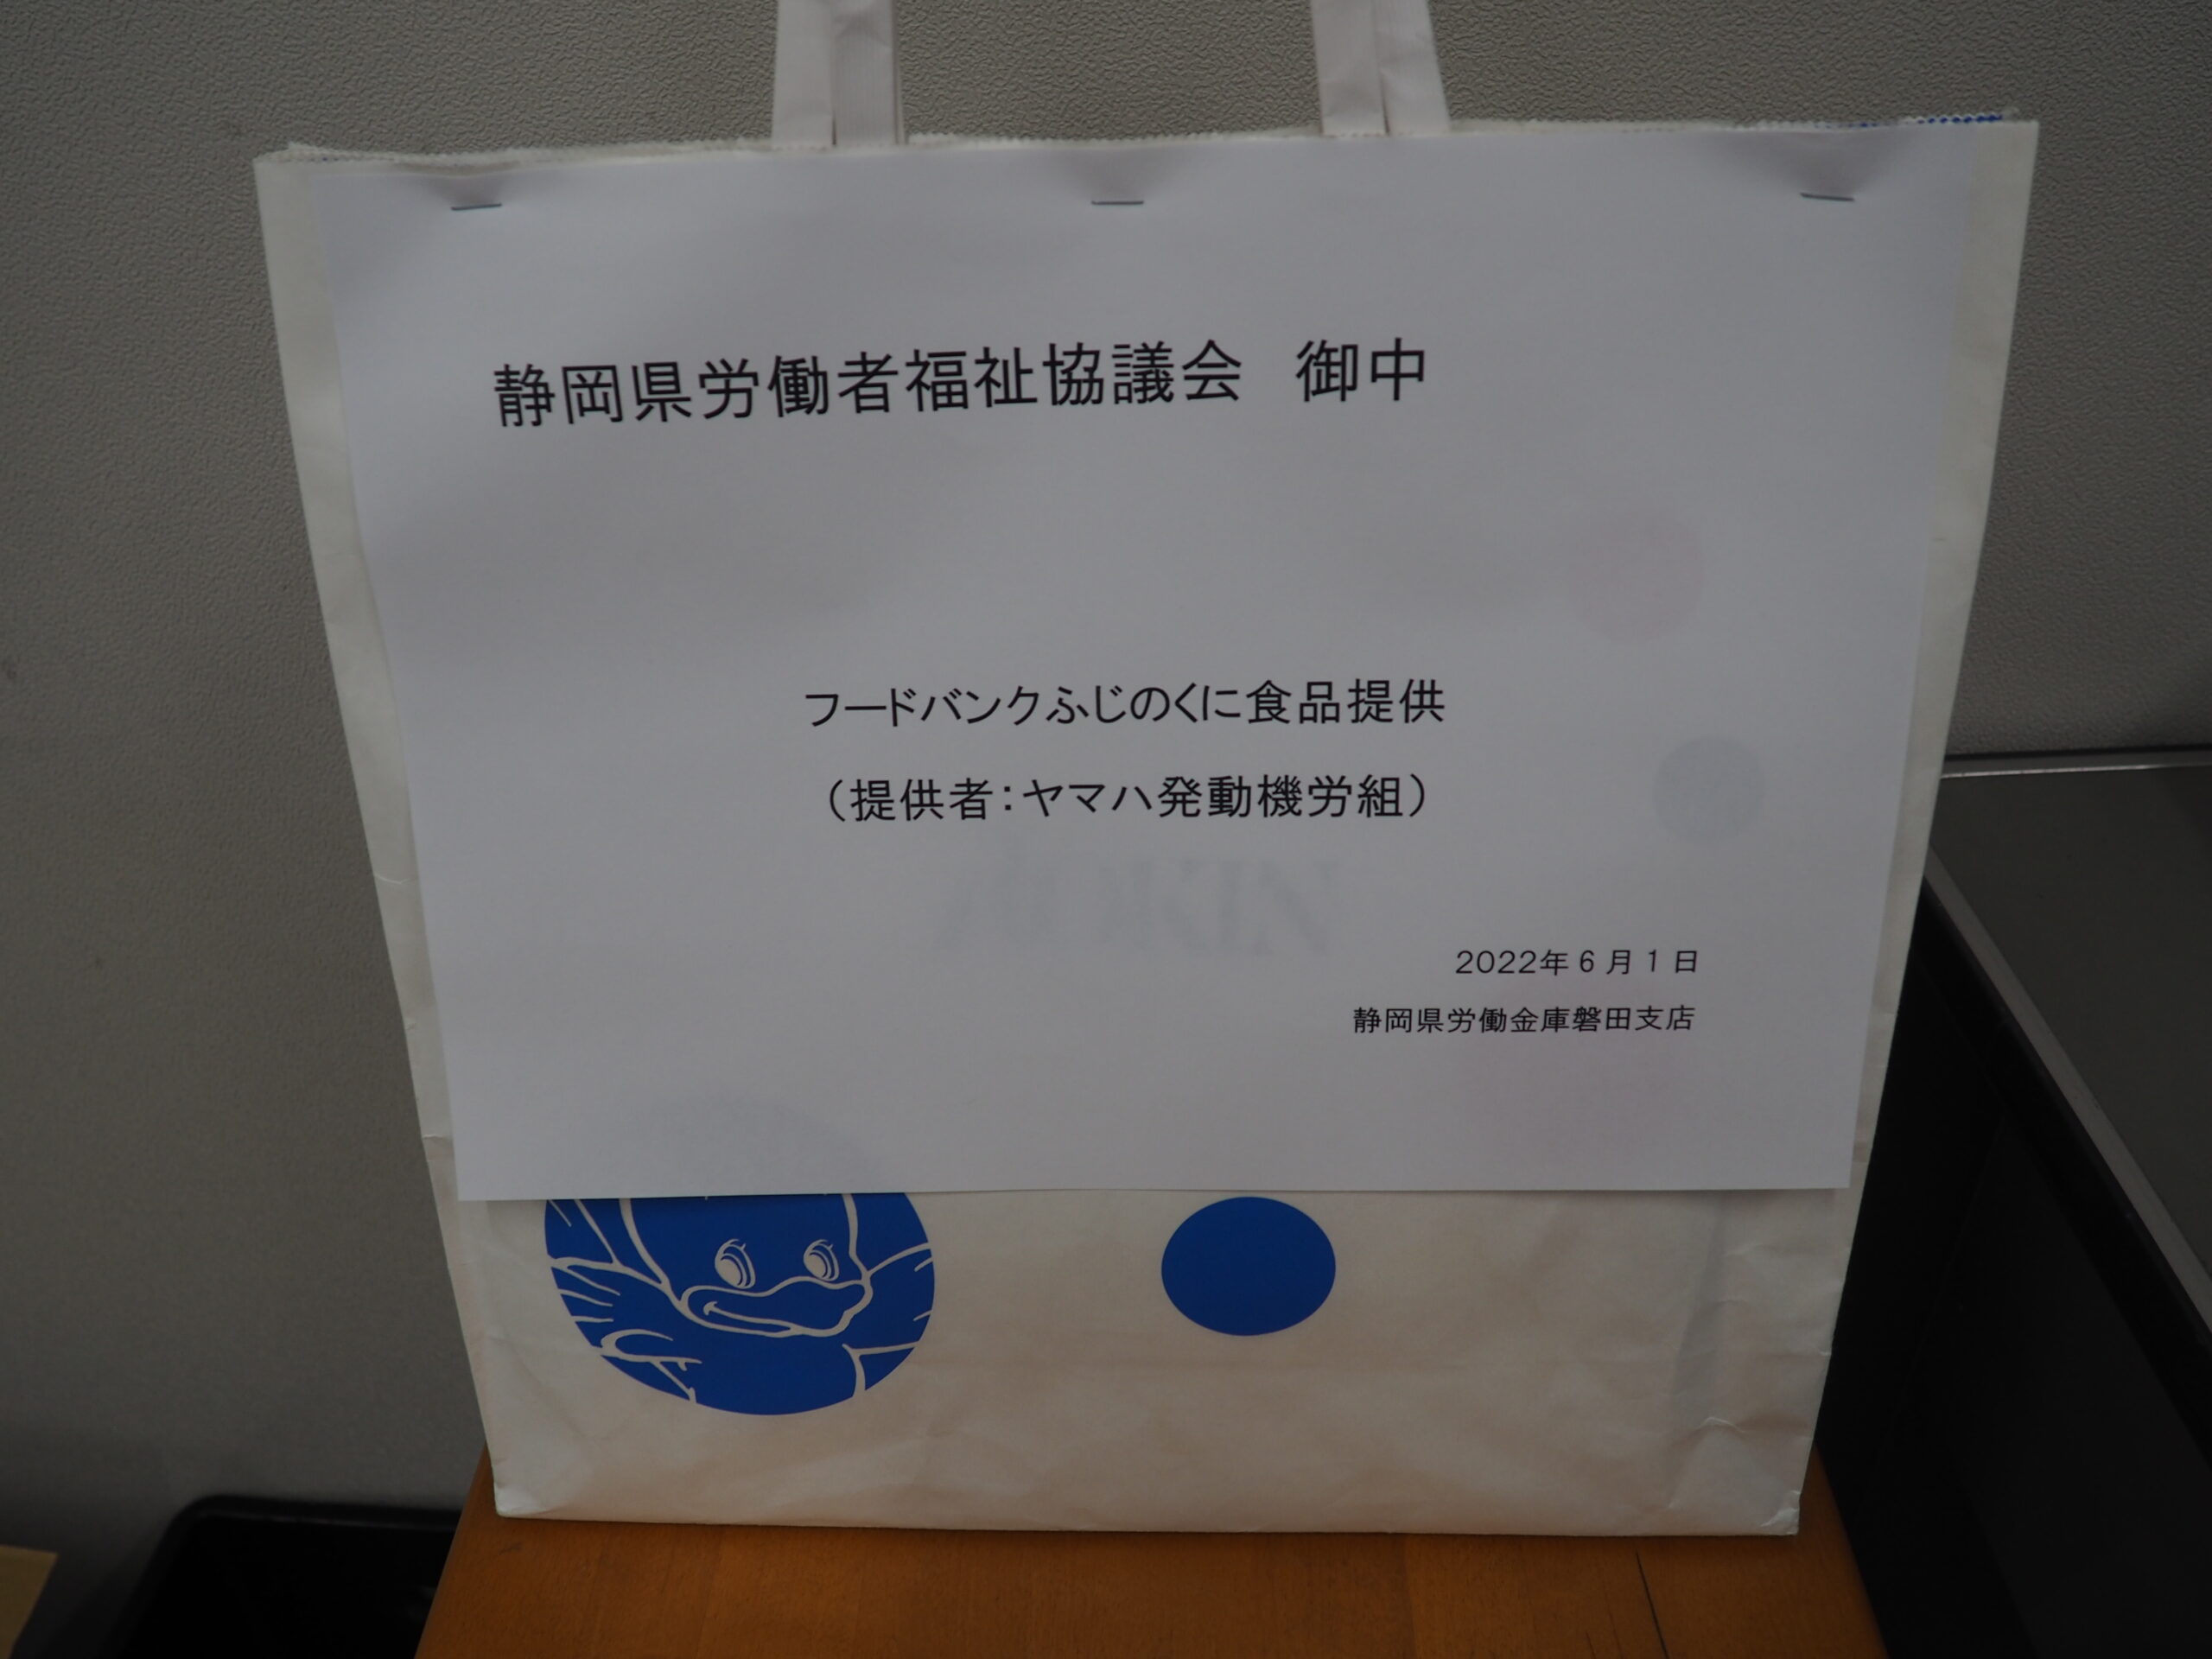 ヤマハ発動機労働組合様・志太地区労福協様から食品を提供いただきました。